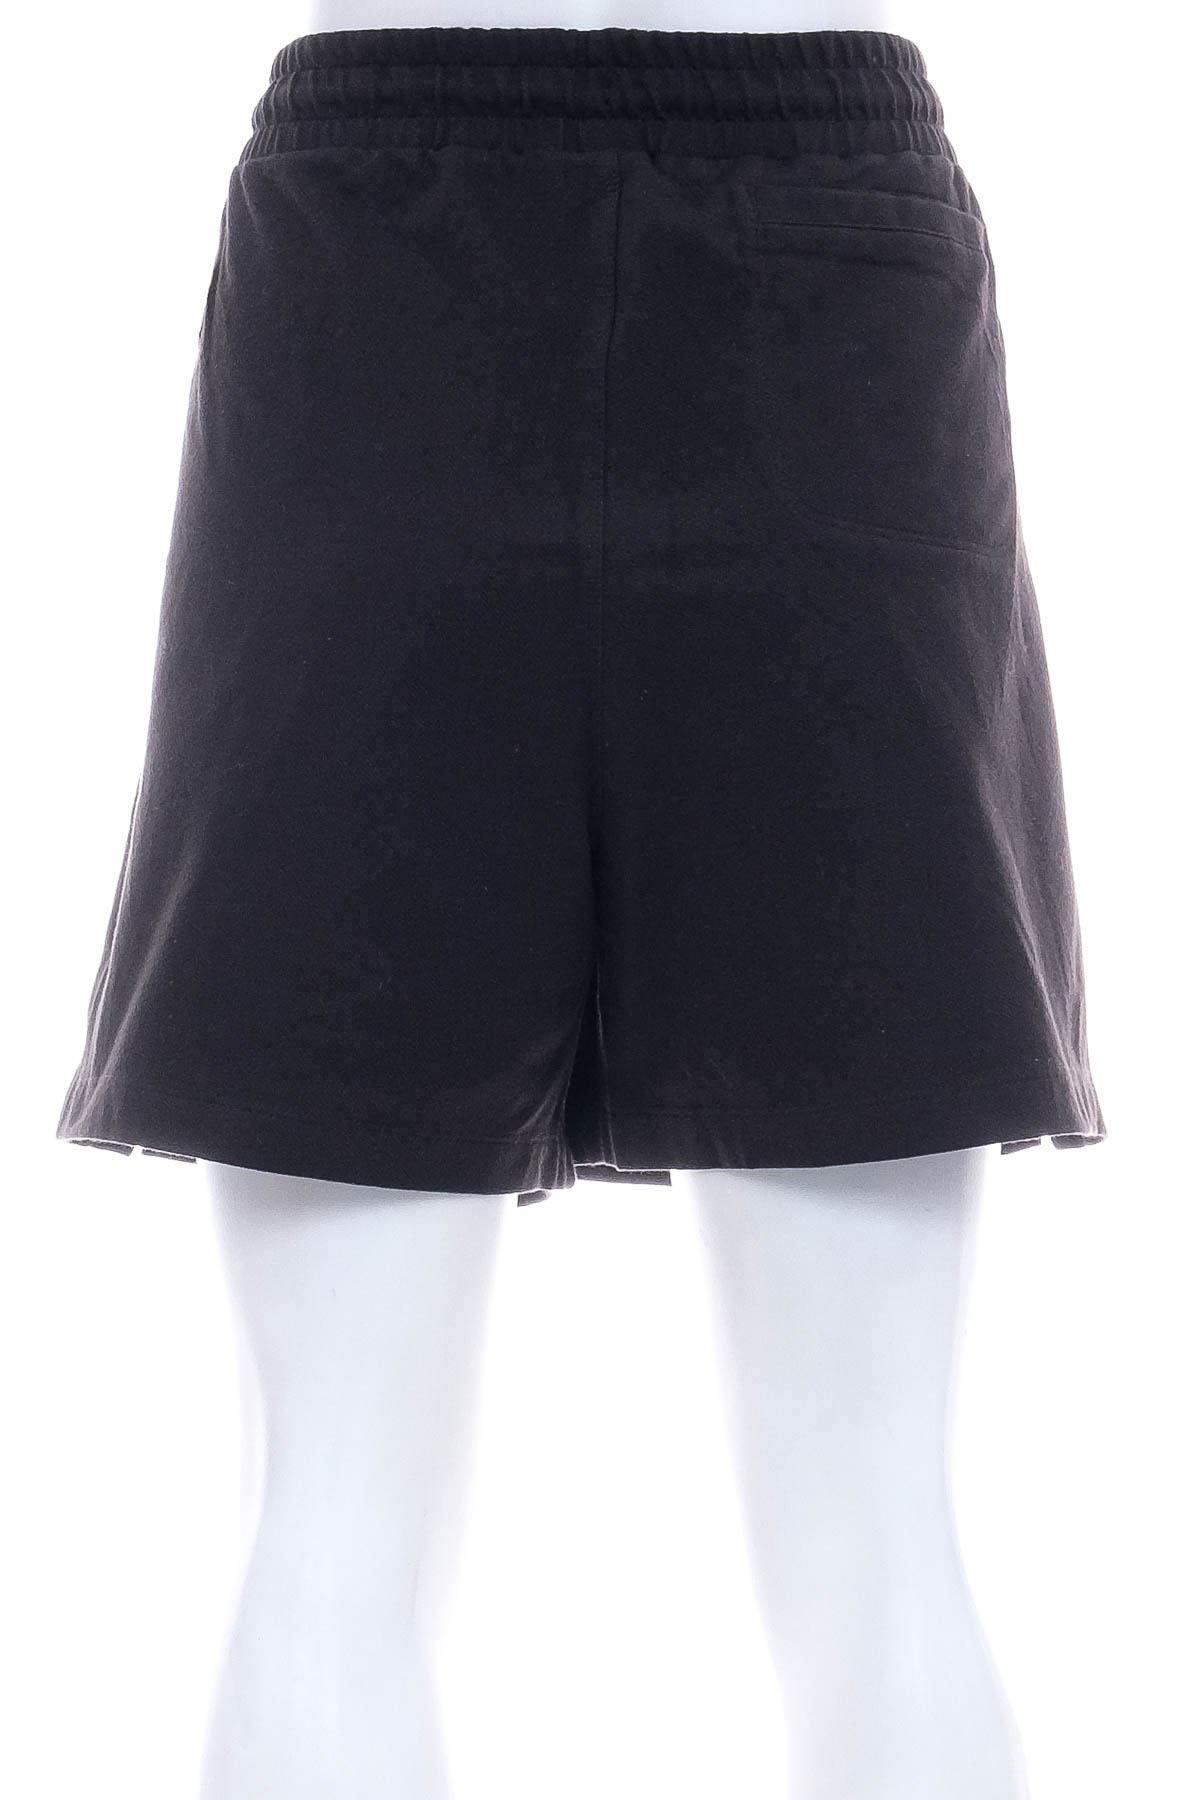 Female shorts - ATHLETIC WORKS - 1